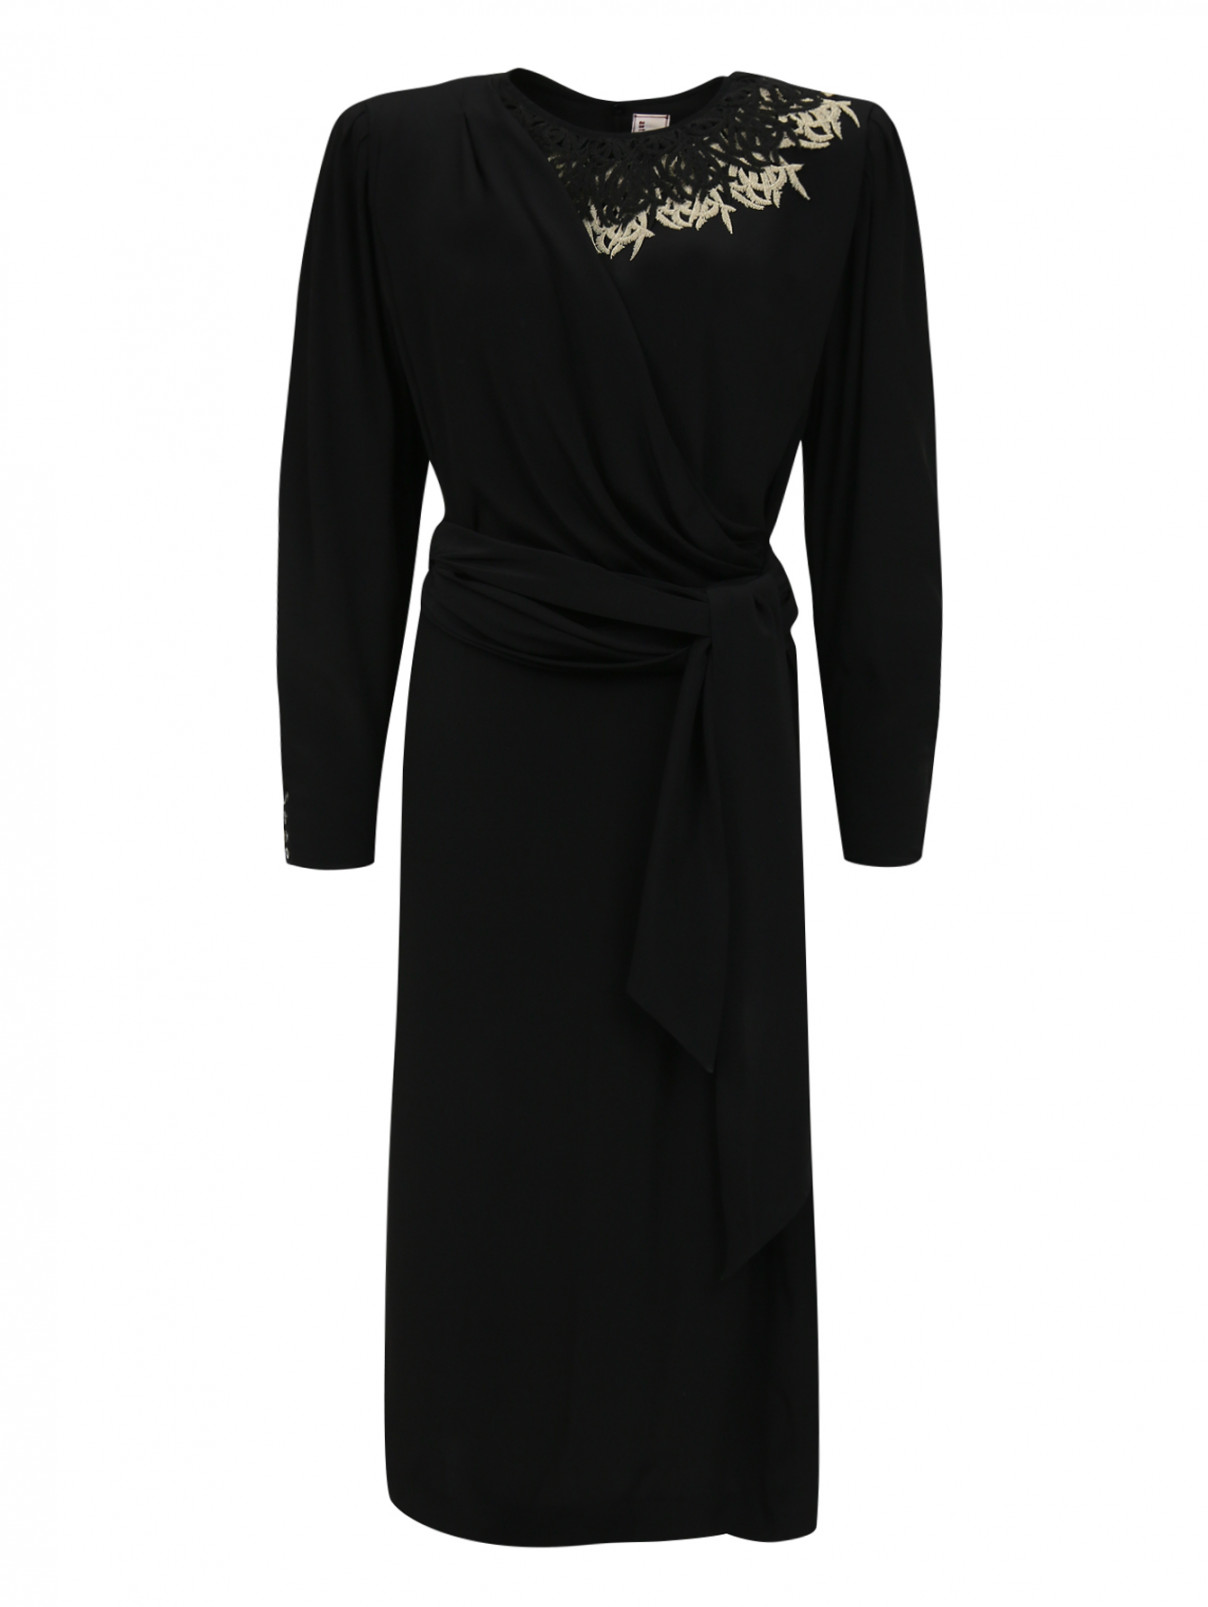 Платье-миди с кружевной отделкой Antonio Marras  –  Общий вид  – Цвет:  Черный